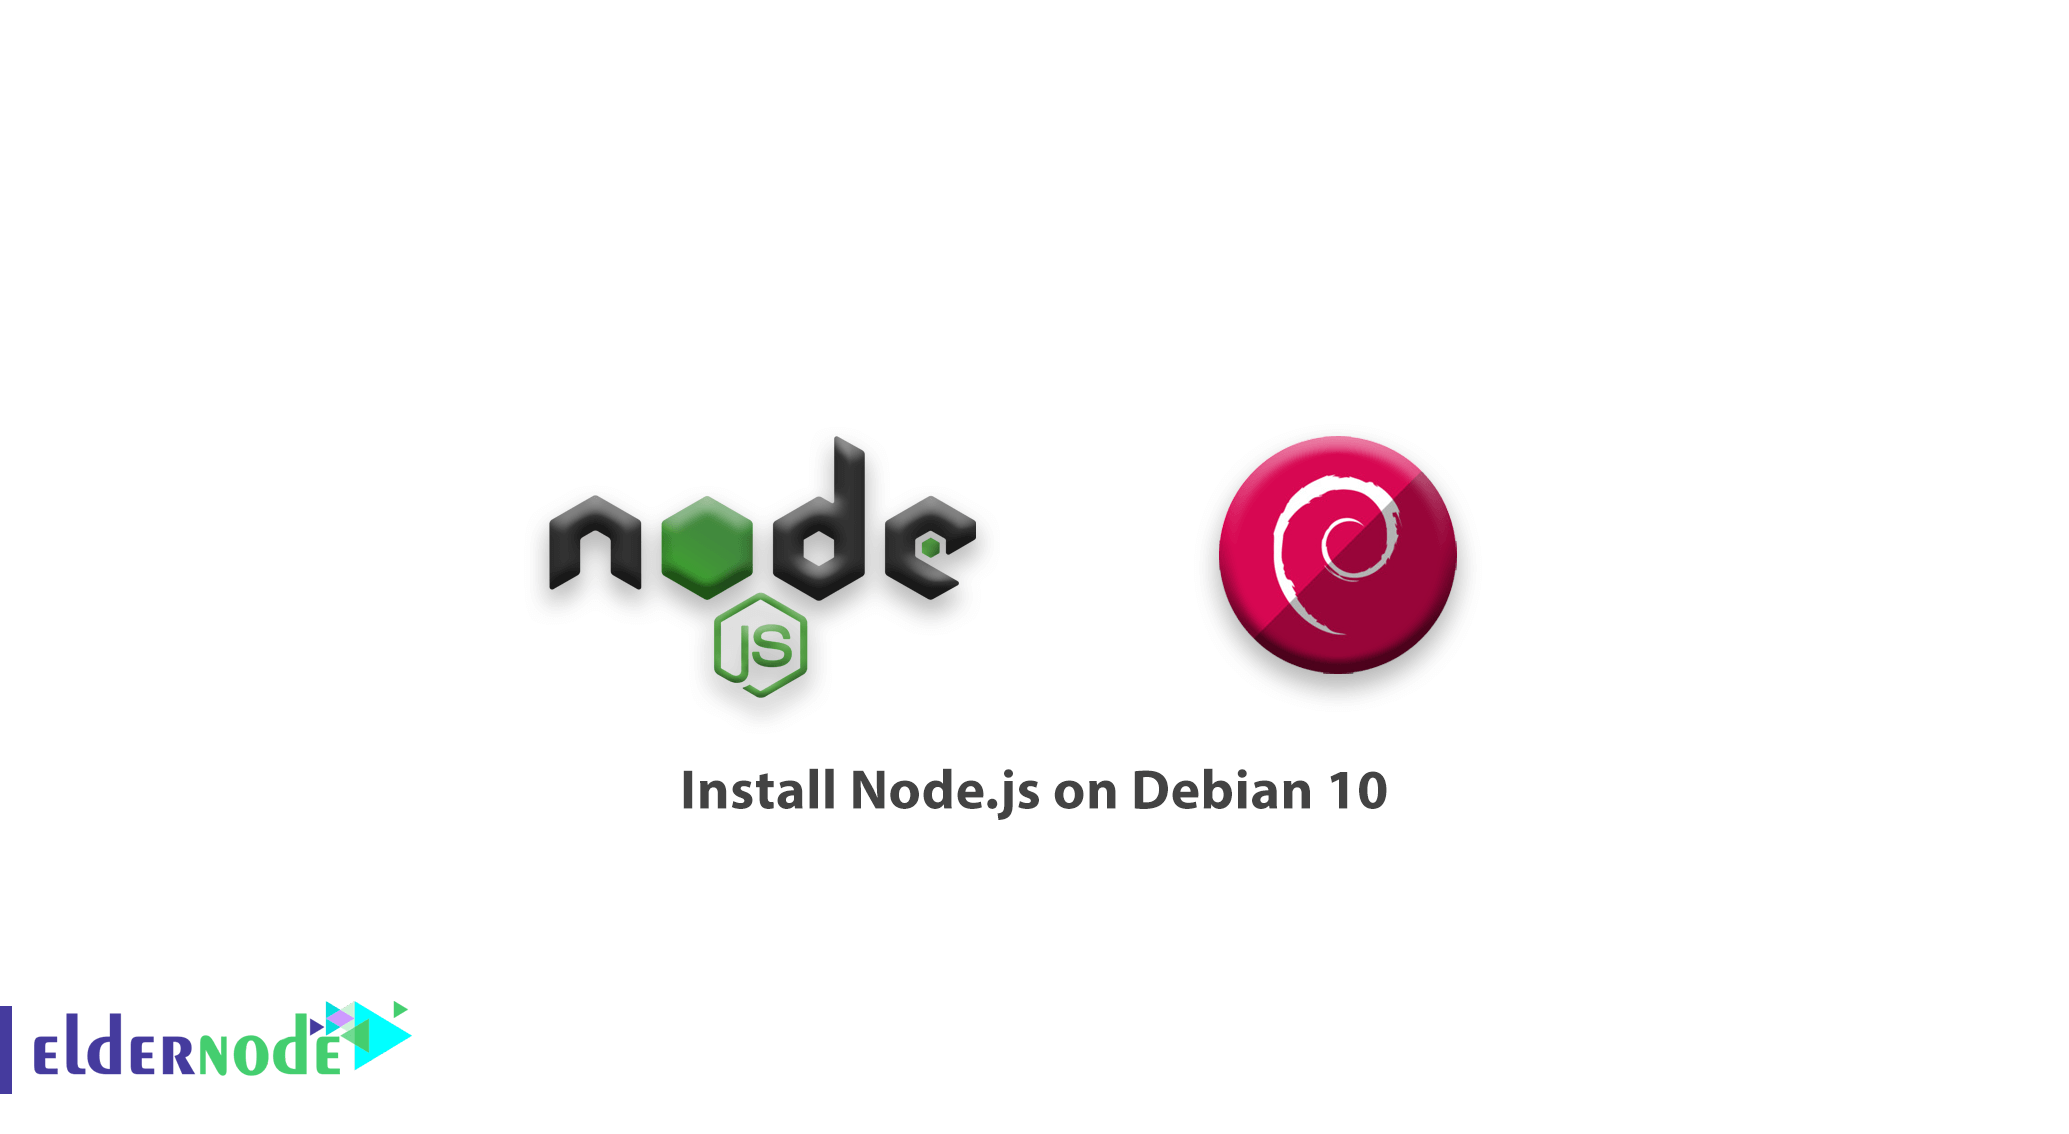 debian install node js